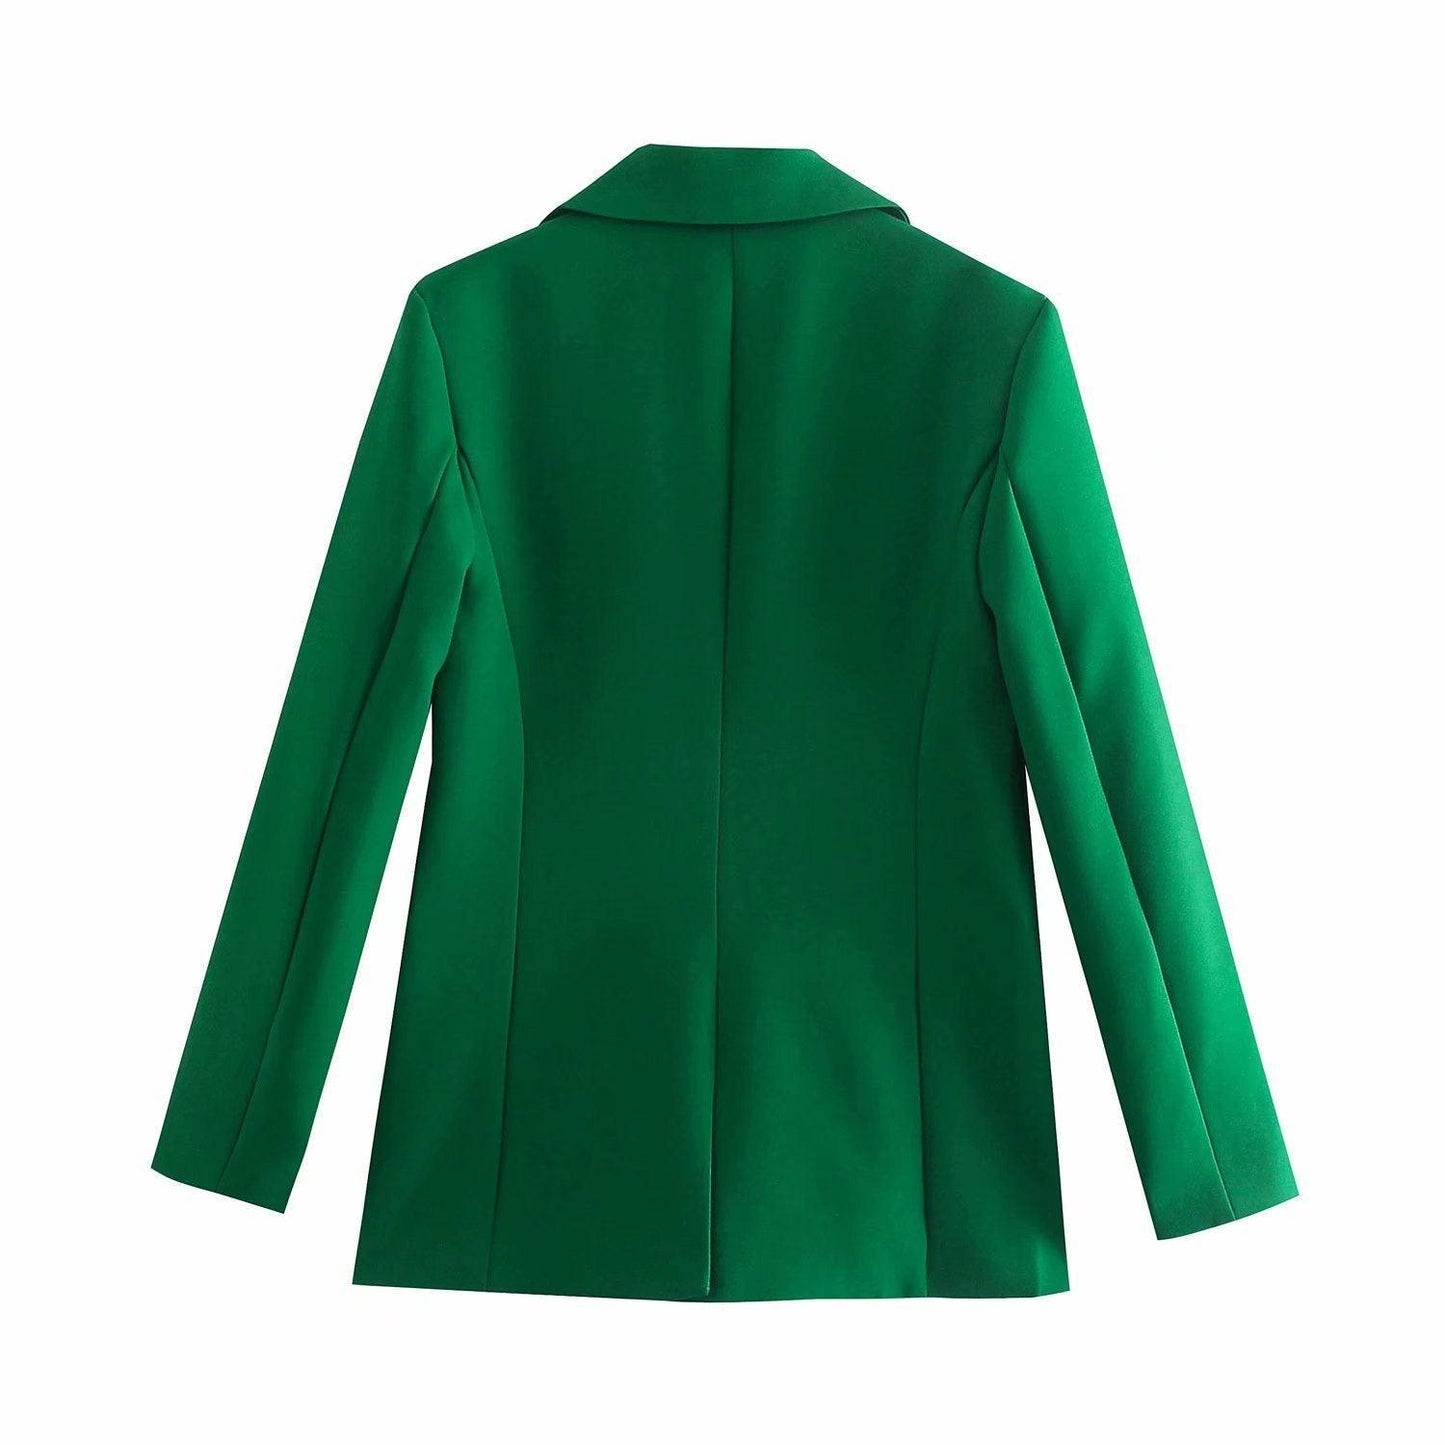 Dark Green Blazer Women - Casual - Plain-Solid - Women's Blazer - LeStyleParfait